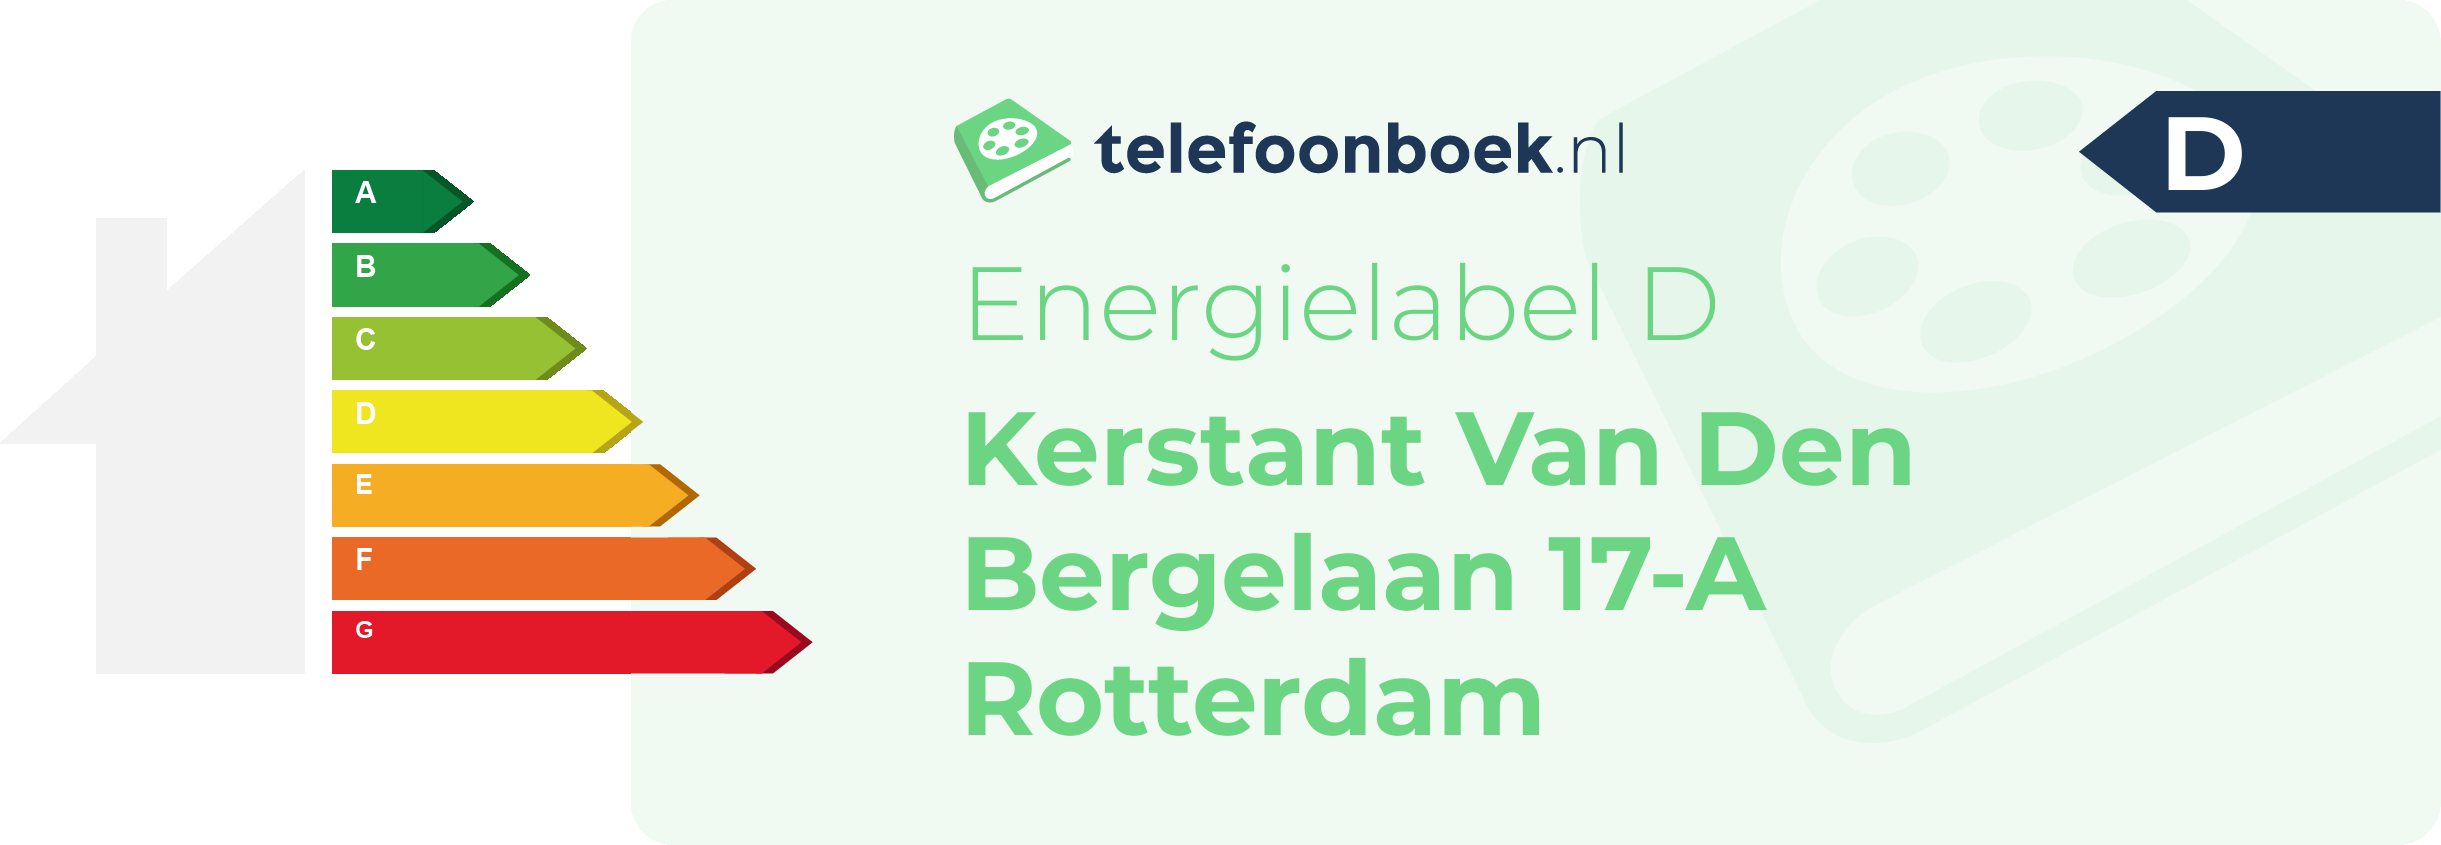 Energielabel Kerstant Van Den Bergelaan 17-A Rotterdam